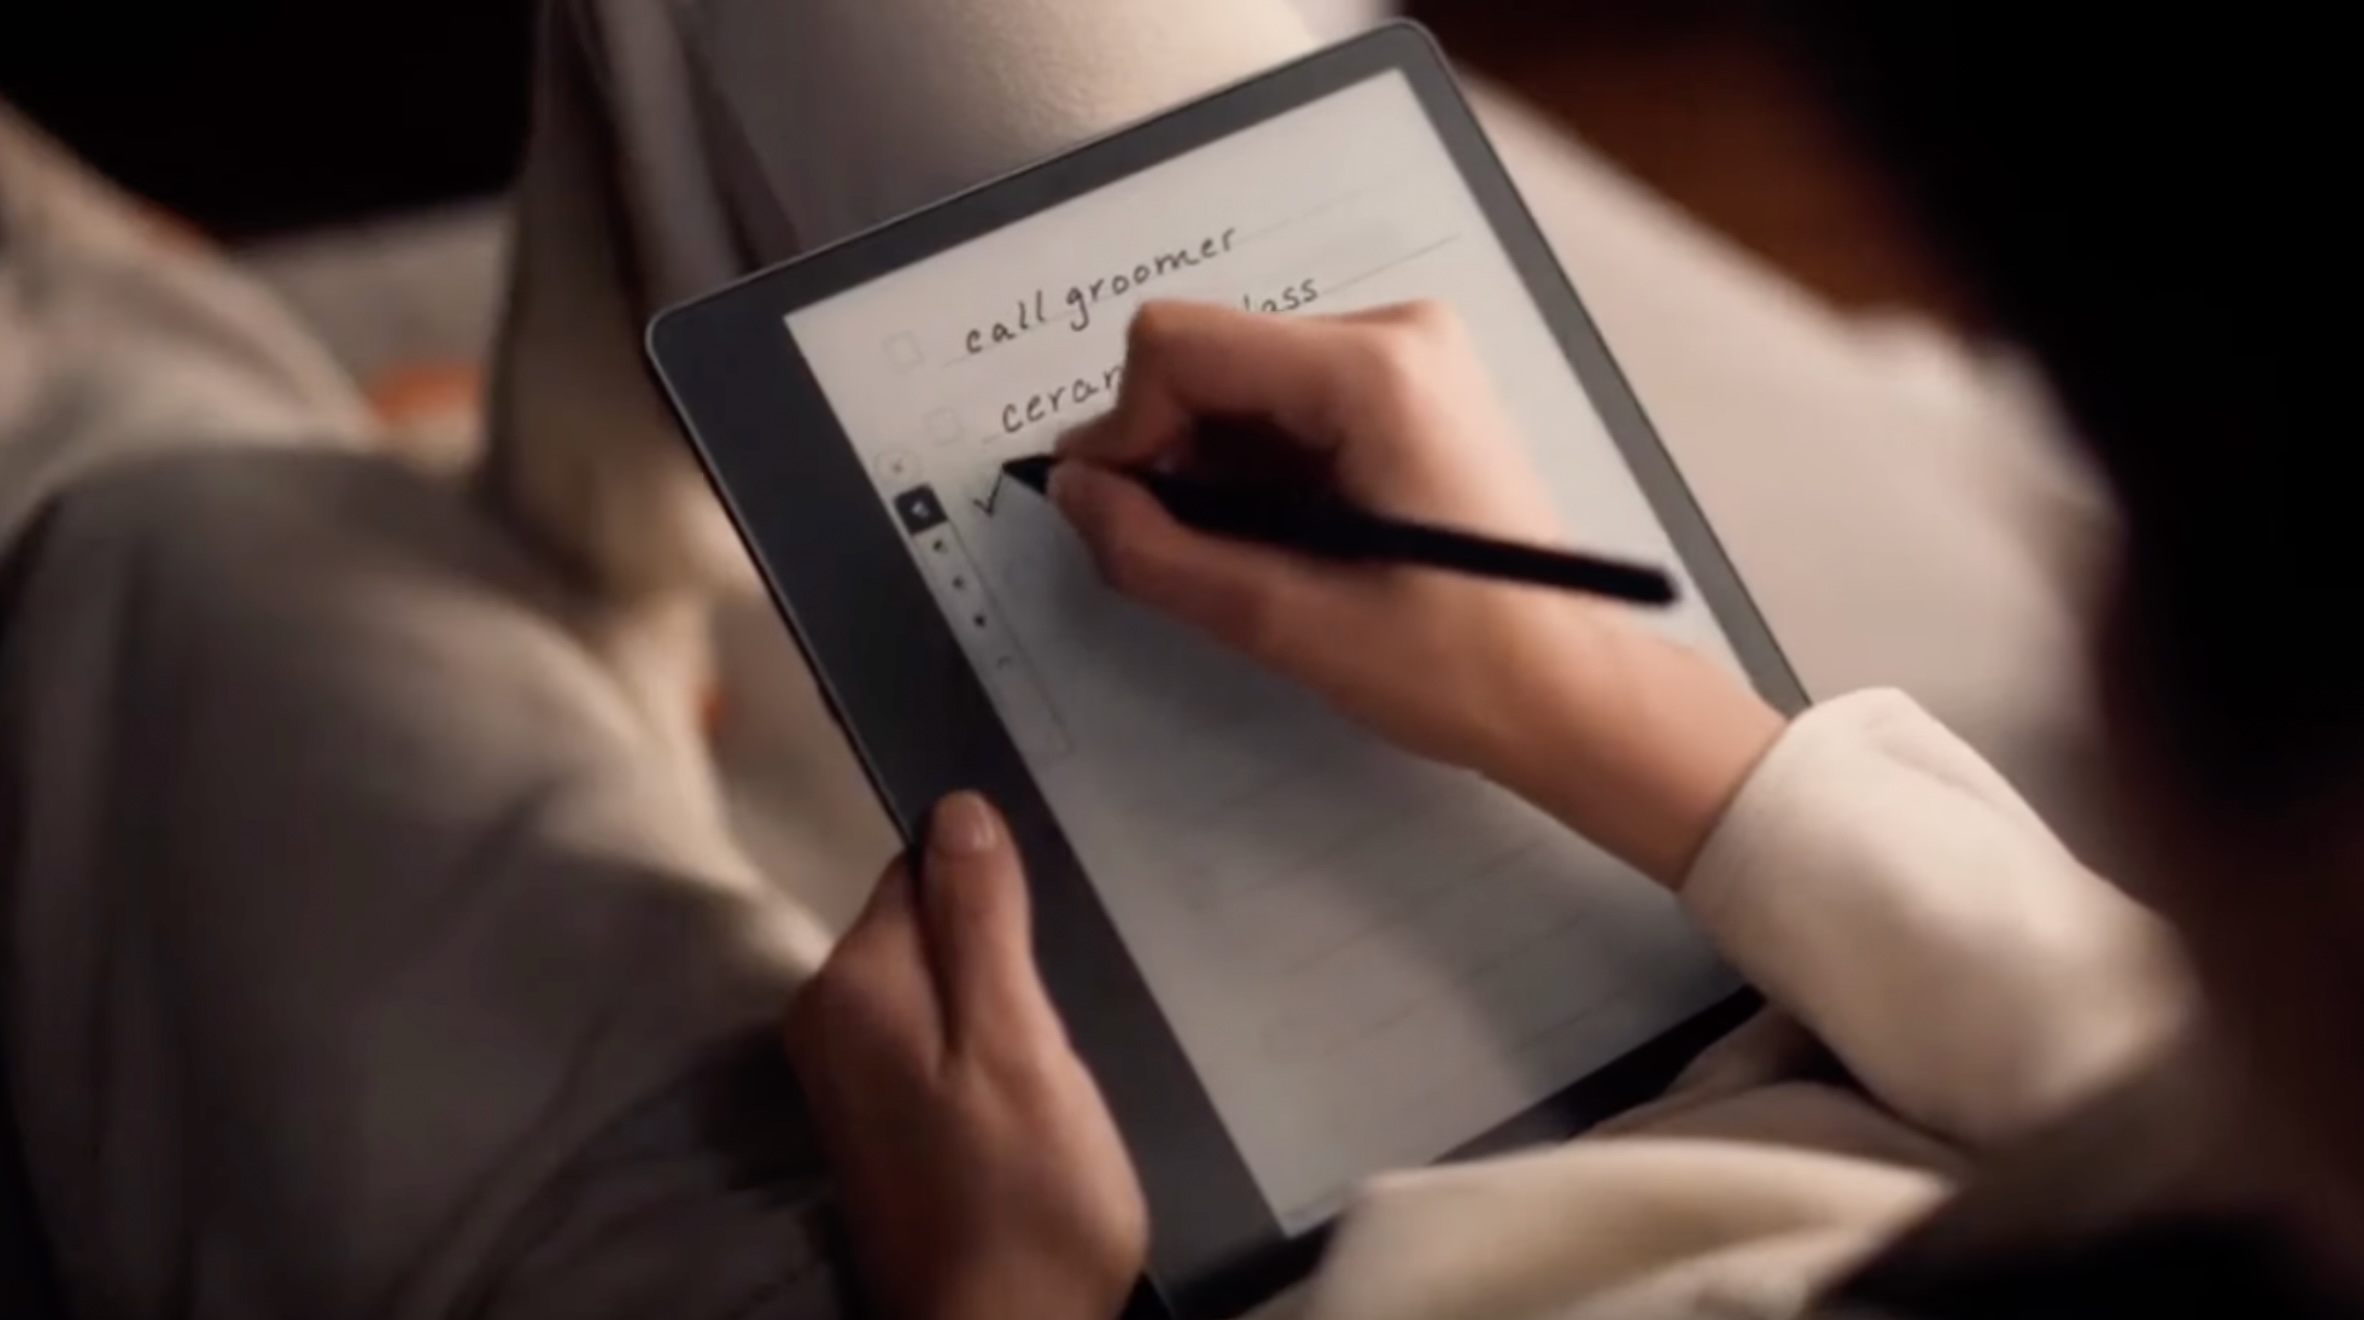 Tablette ReMarkable 2.0 : révolution de l'écriture numérique